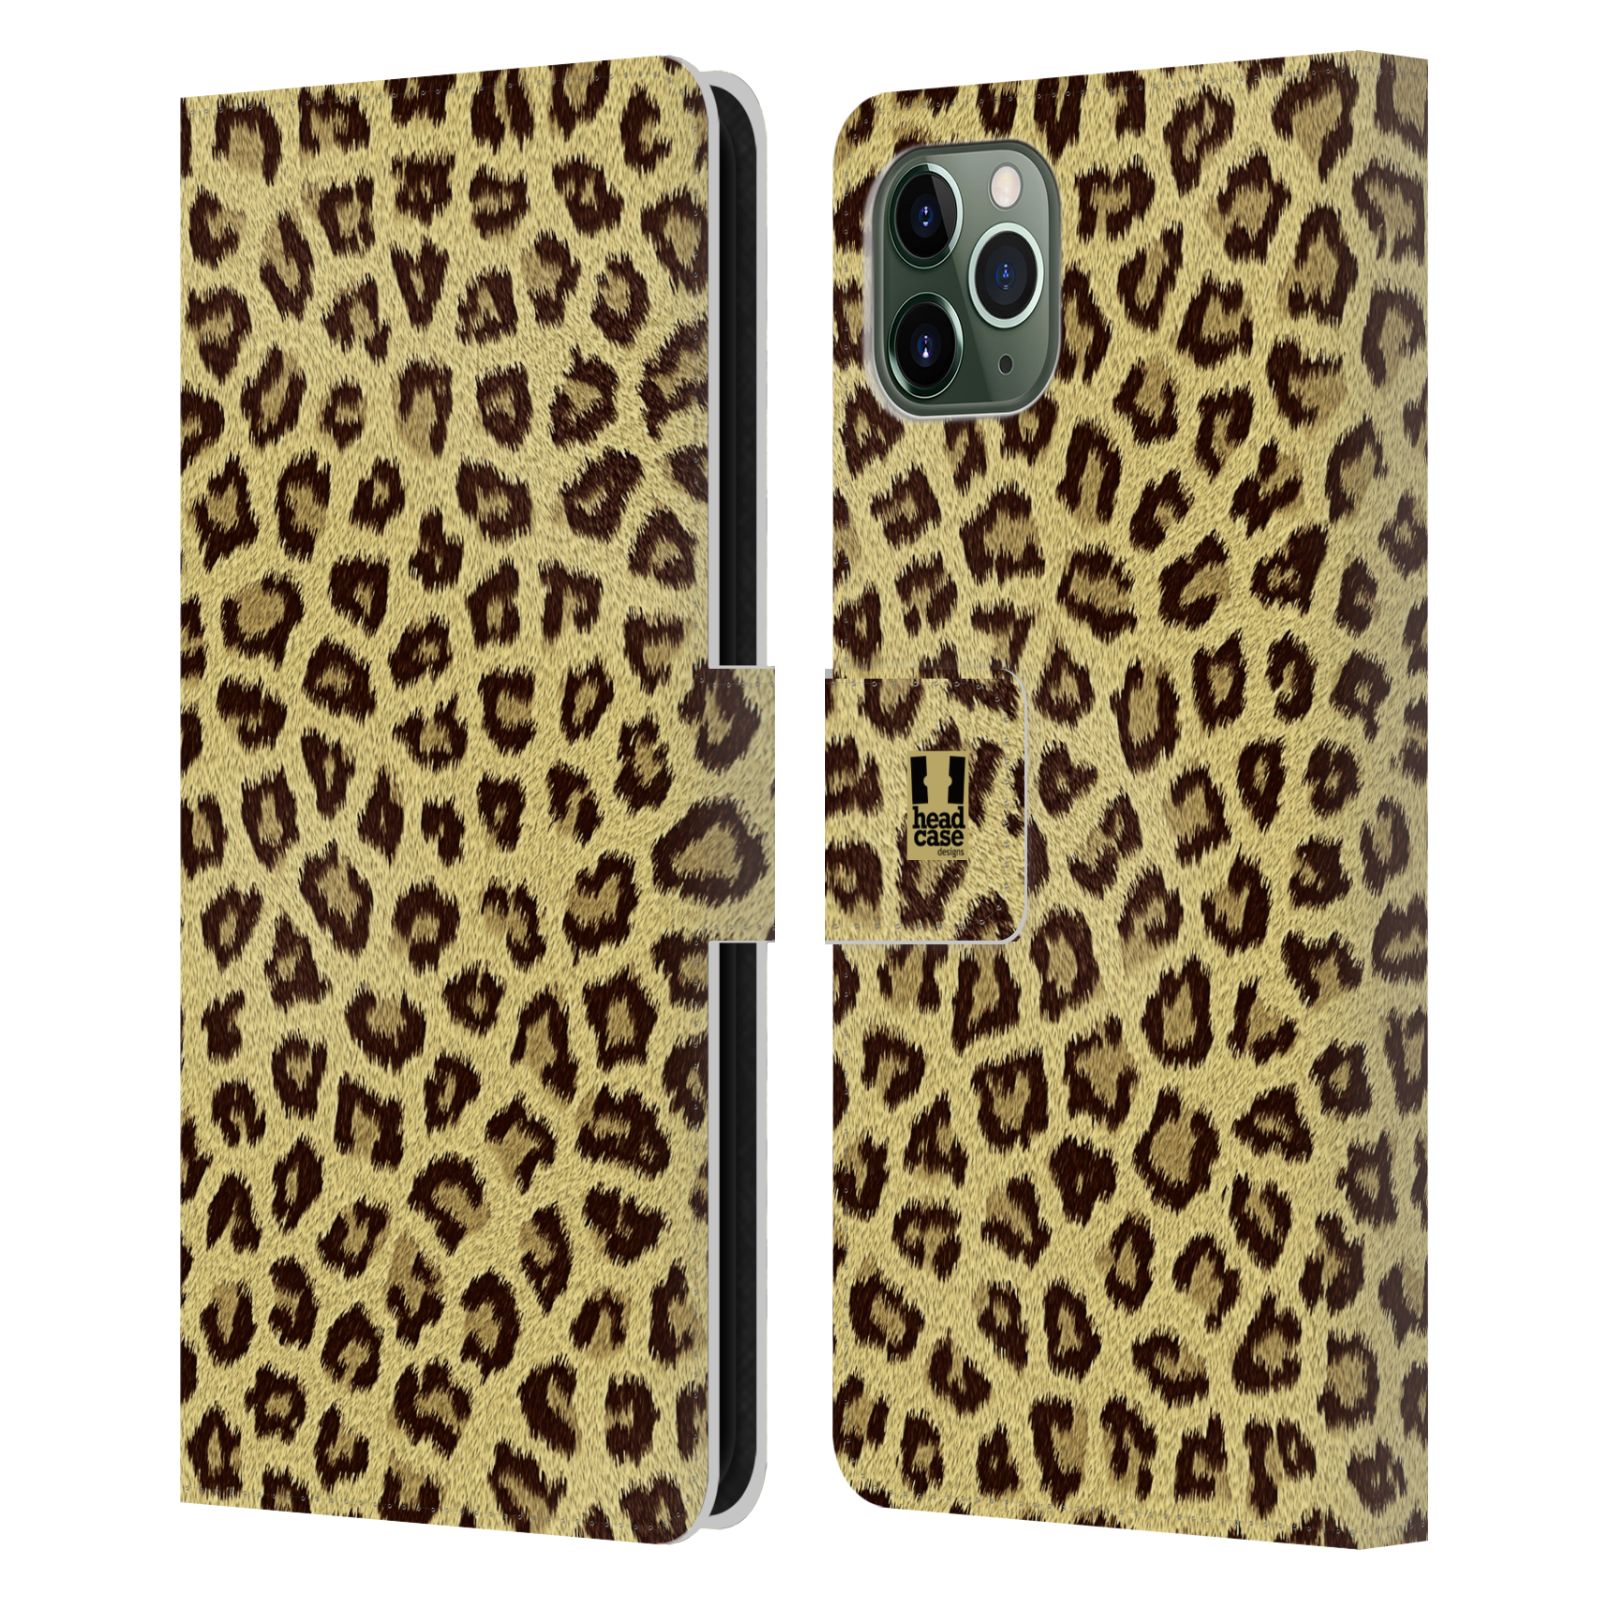 Pouzdro na mobil Apple Iphone 11 PRO MAX zvíře srst divoká kolekce jaguár, gepard